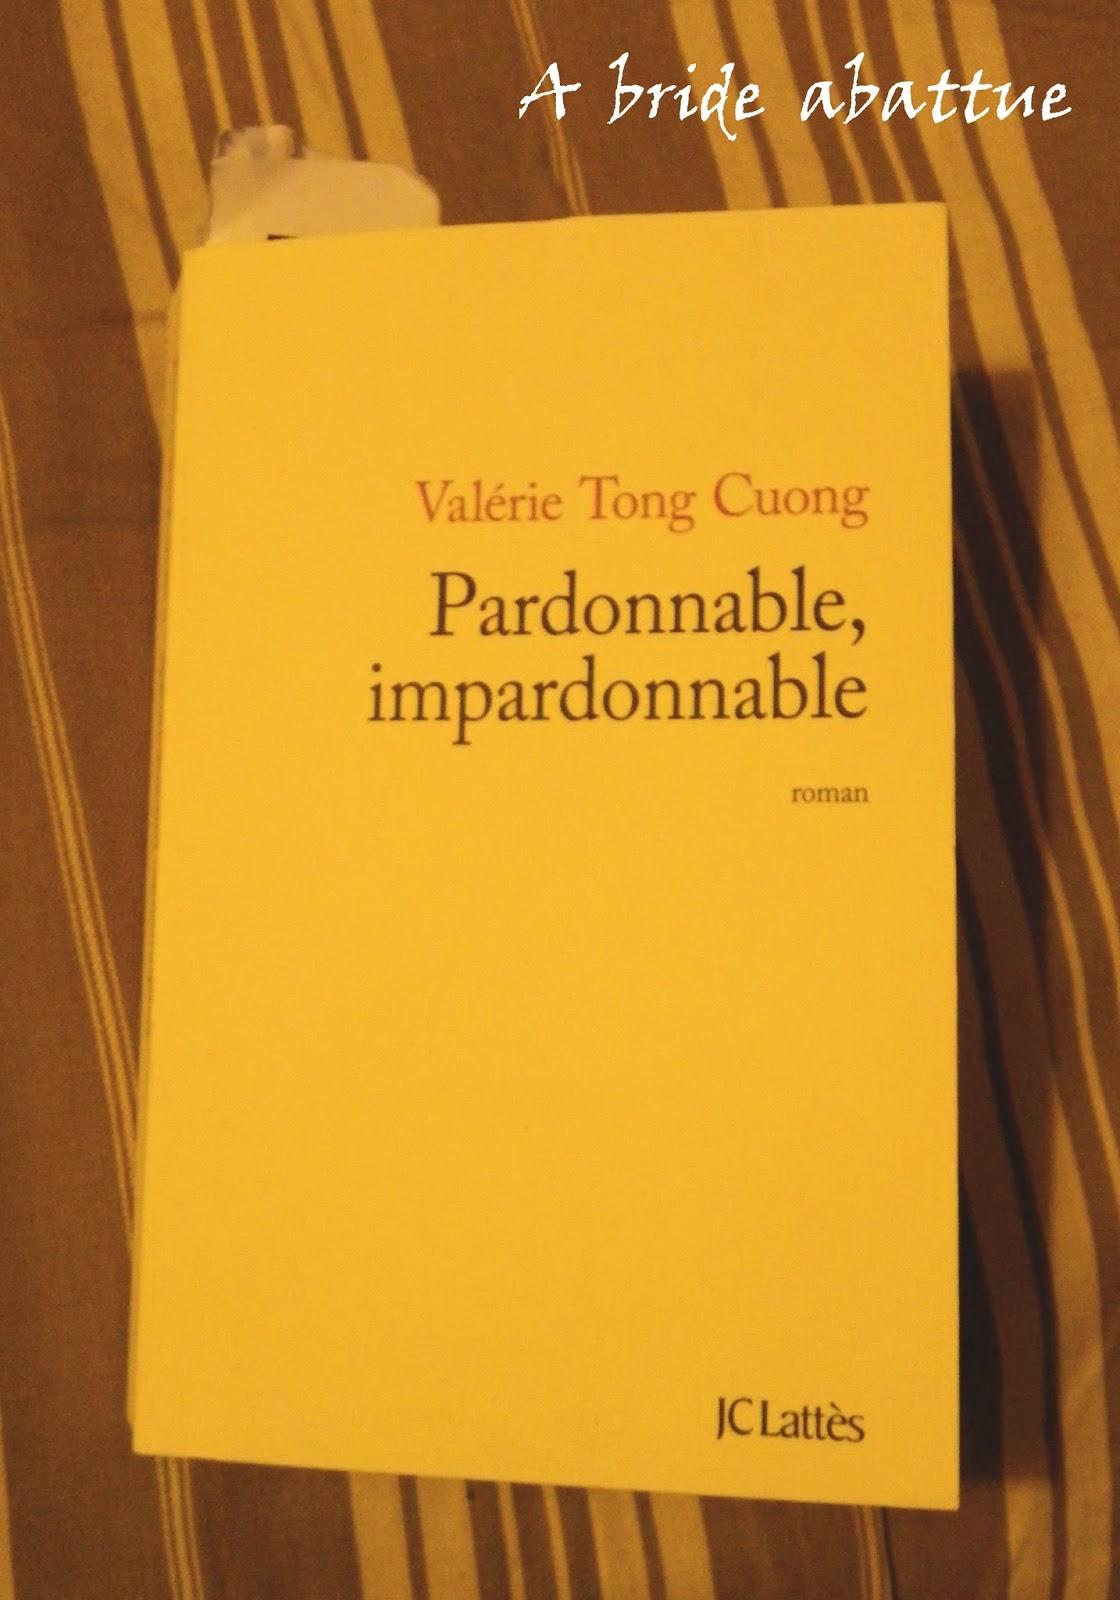 Pardonnable, impardonnable de Valérie Tong Cuong chez JC Lattès